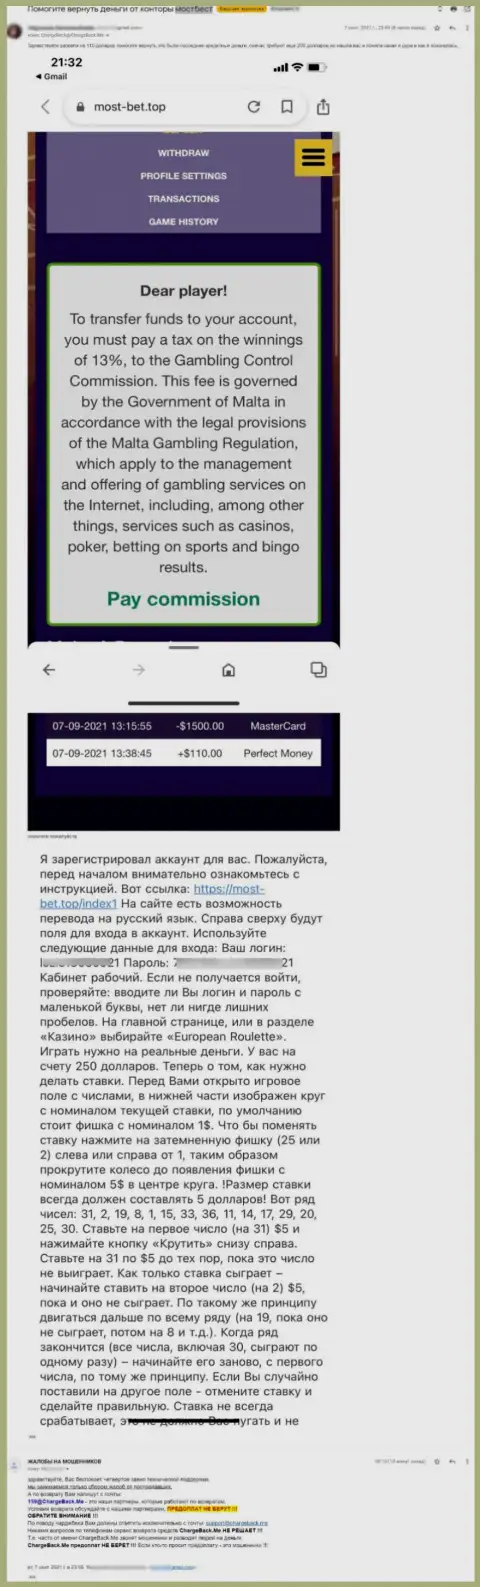 АФЕРИСТЫ МостБет отказываются возвращать клиенту денежные вложения - жалоба